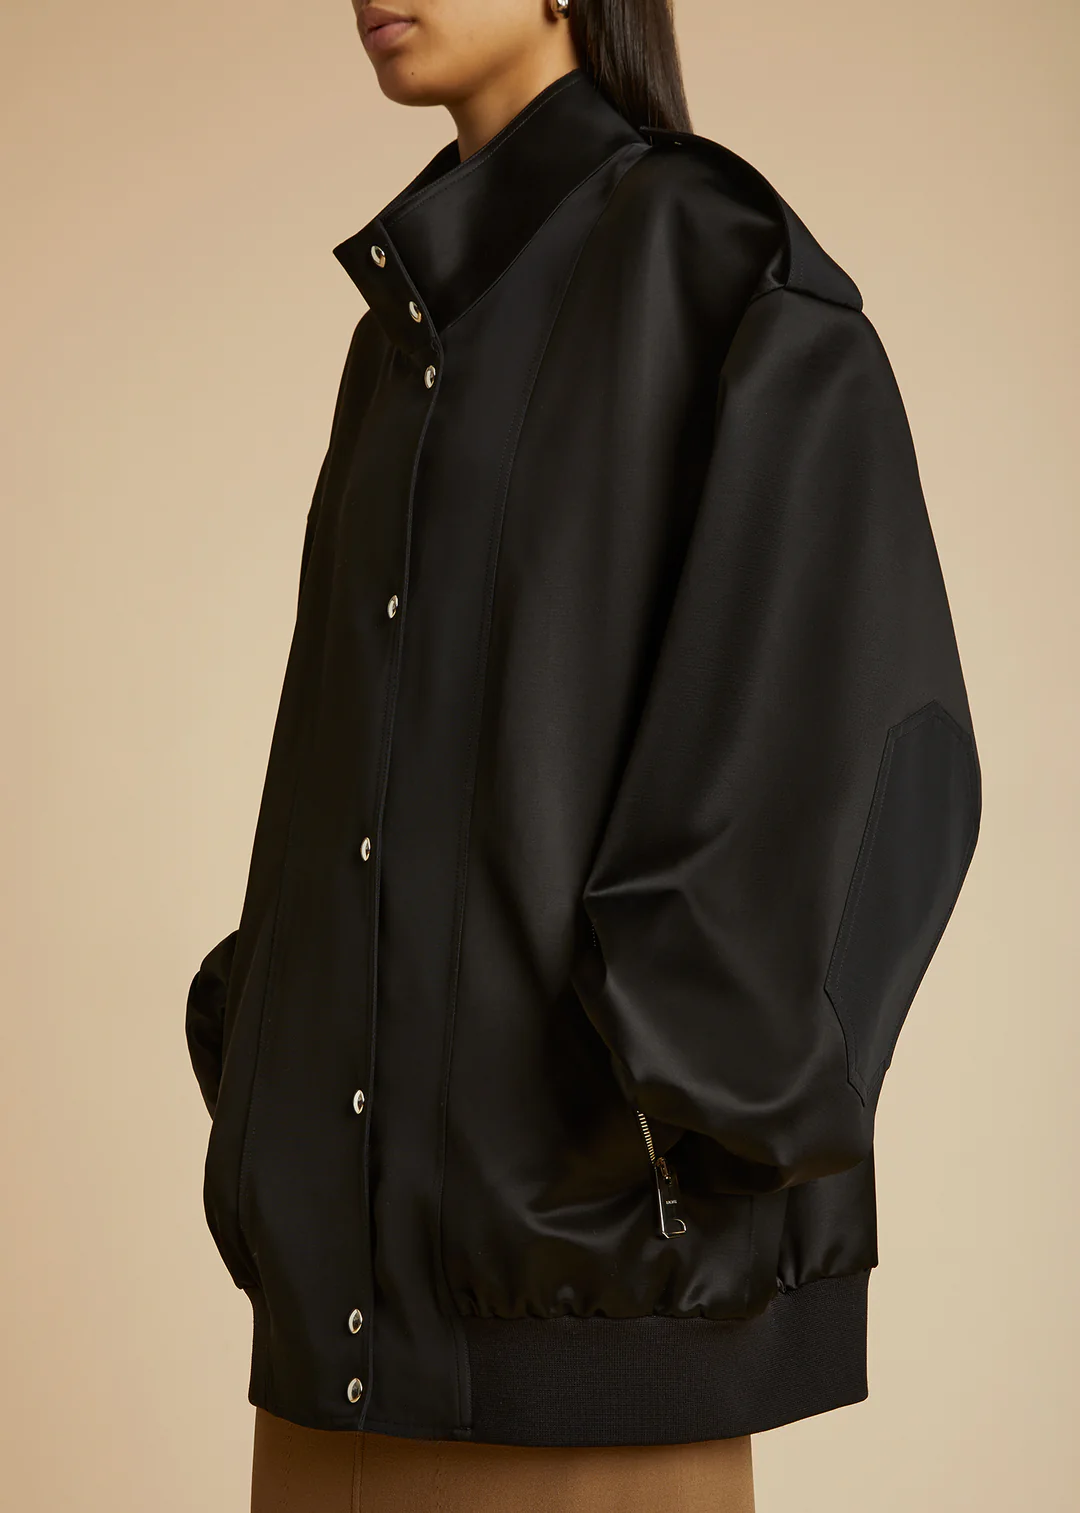 Svelte Boxy Oversized Leather Jacket